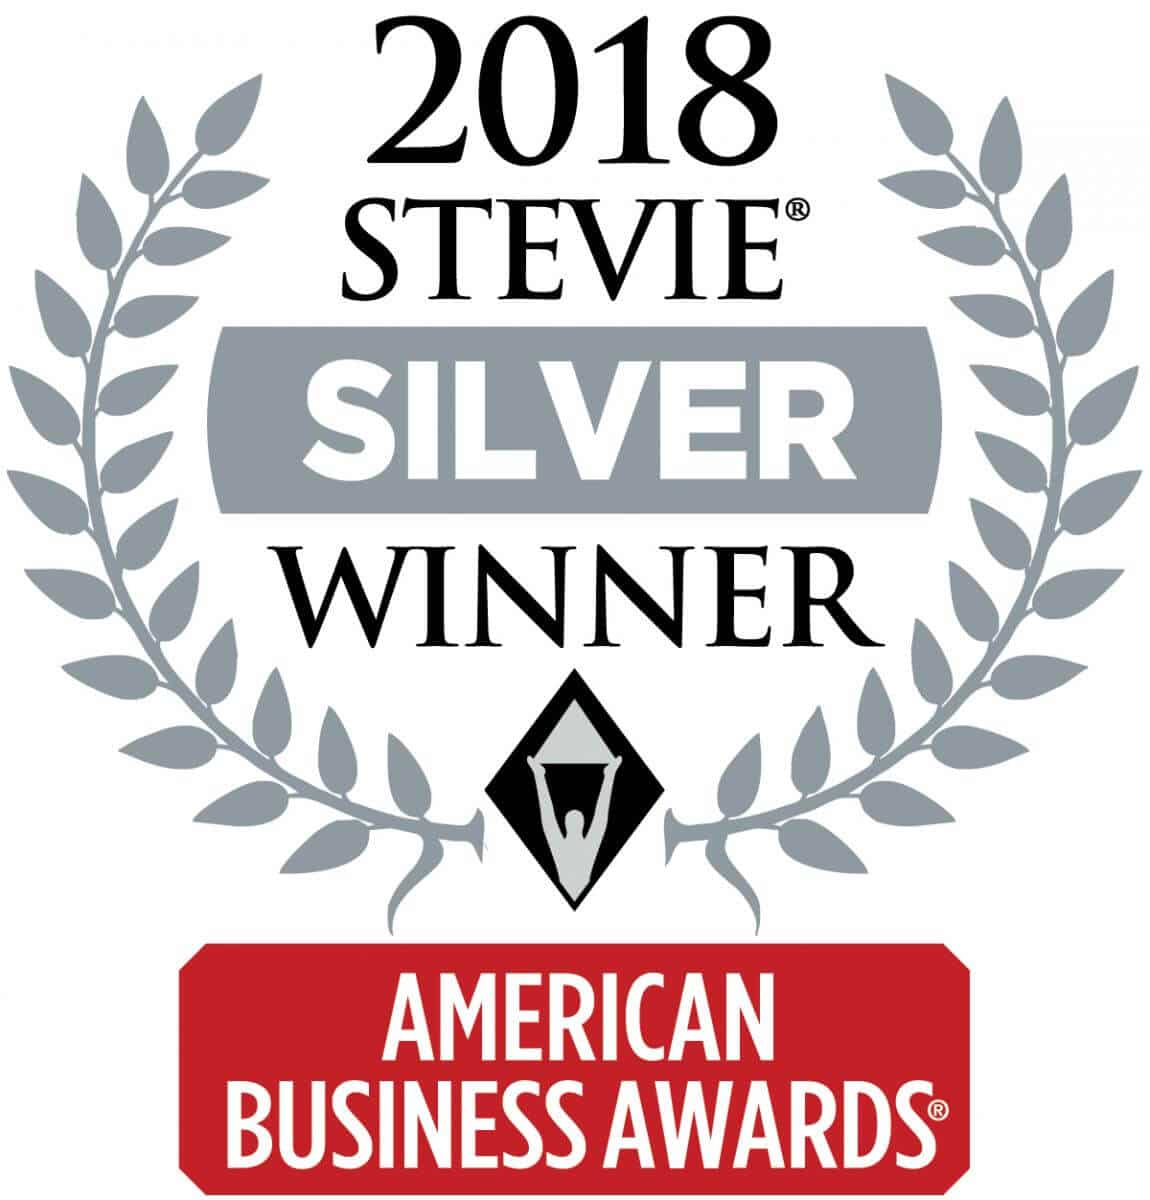 2018 Stevie Silver Winner